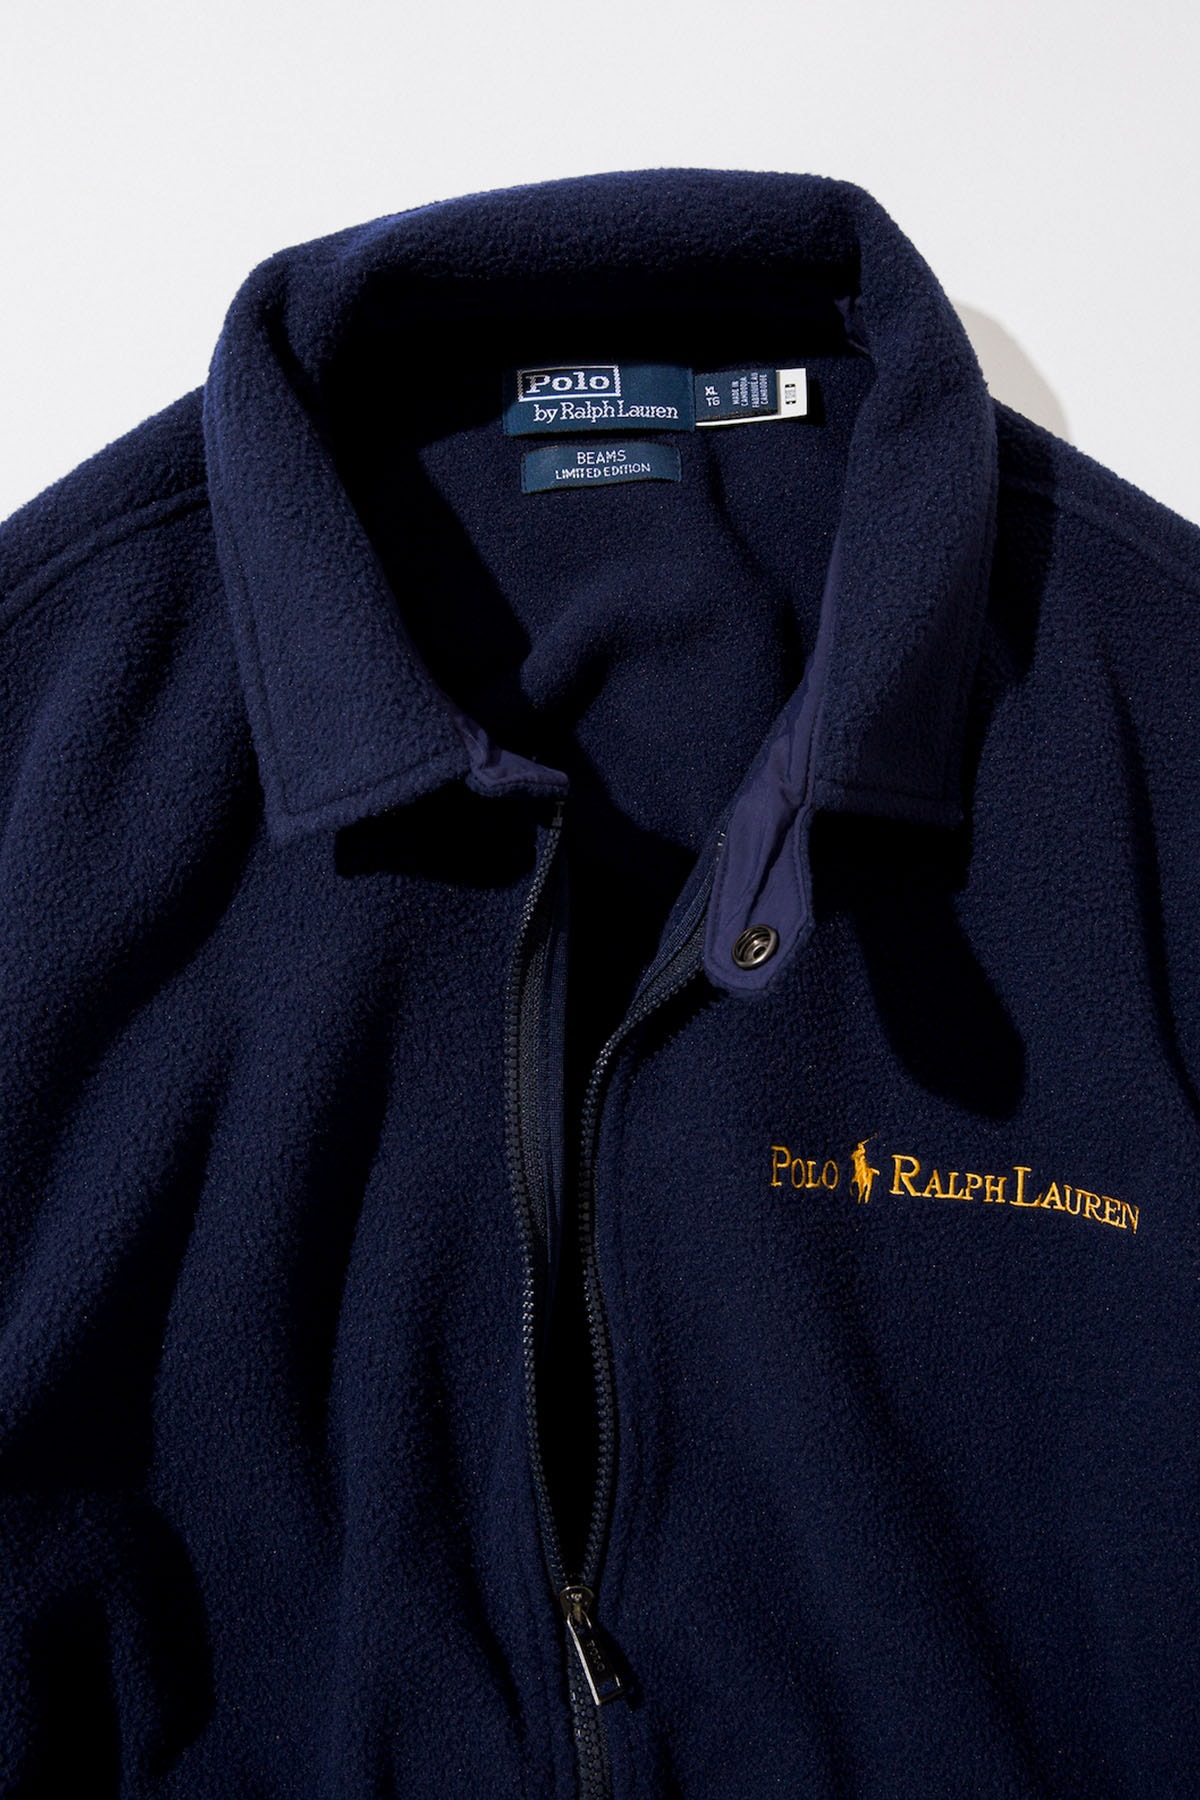 ビームスがポロラルフローレンに別注したロゴ・コレクション第2弾がリリース  BEAMS releases Polo Ralph Lauren's bespoke navy and gold logo collection.